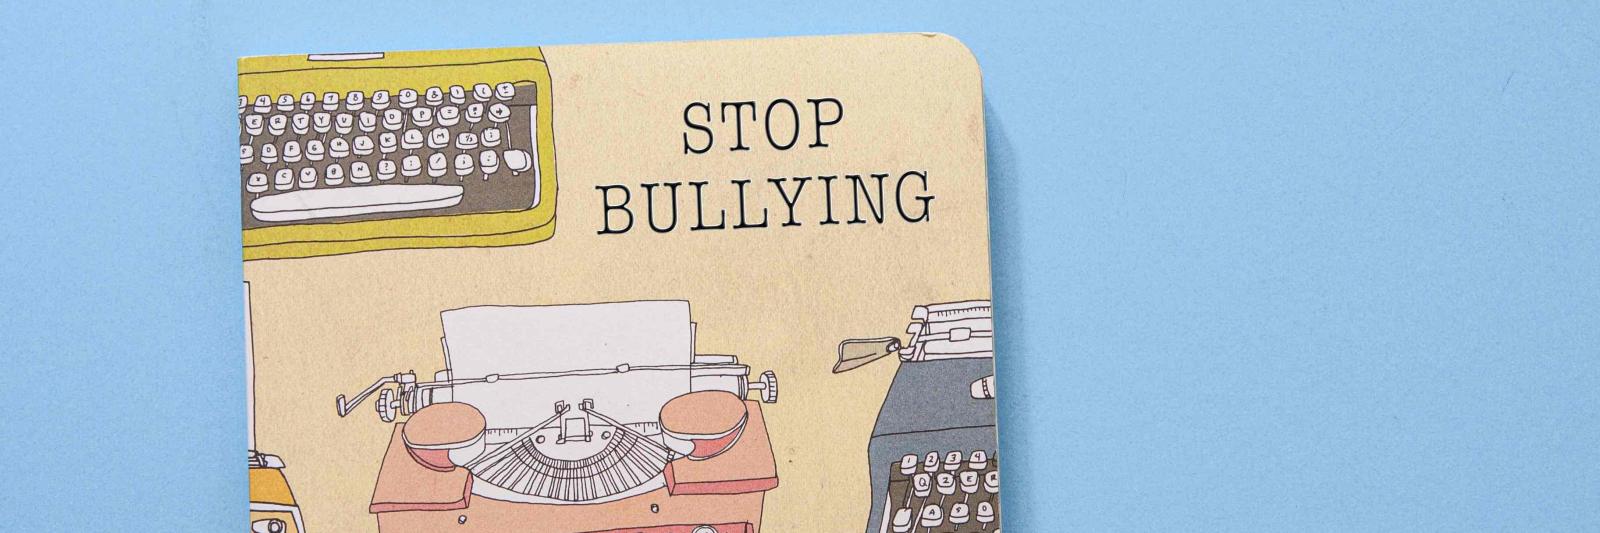 Copertina di un libro con la scritta "Stop bullyng".